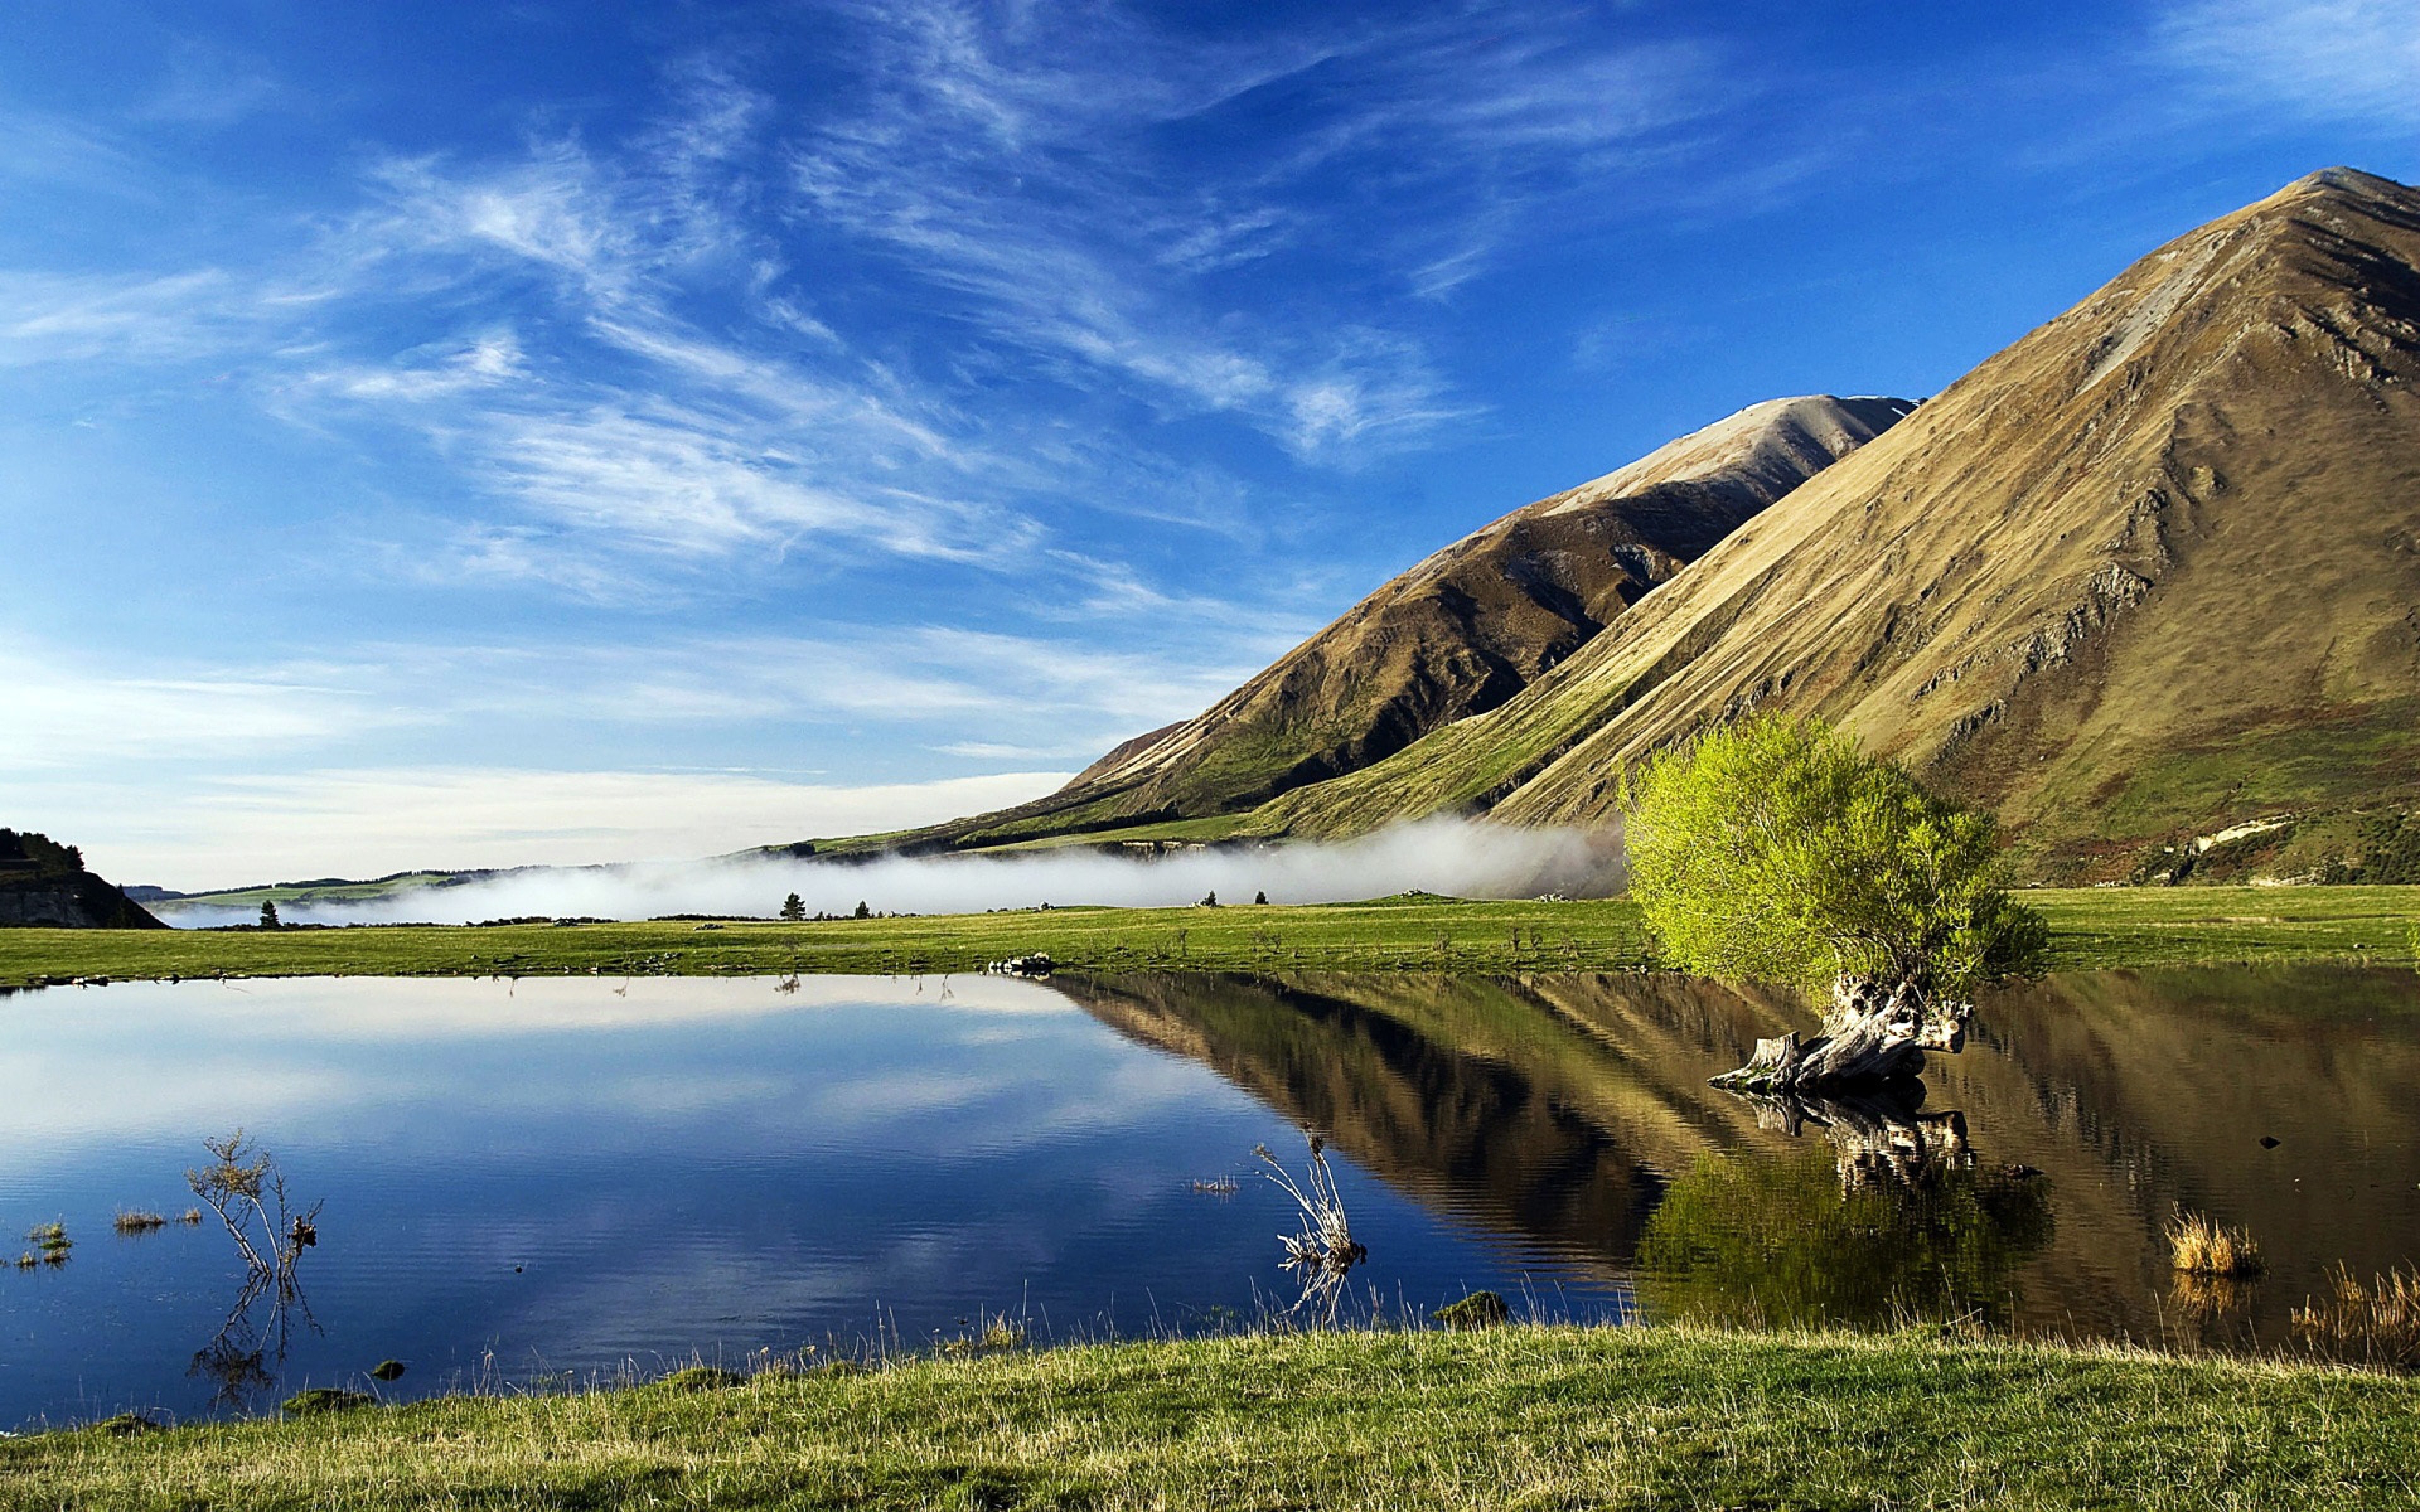 Картинки на обои. Новая Зеландия. Природа. Пейзажи природы. Красивый пейзаж.